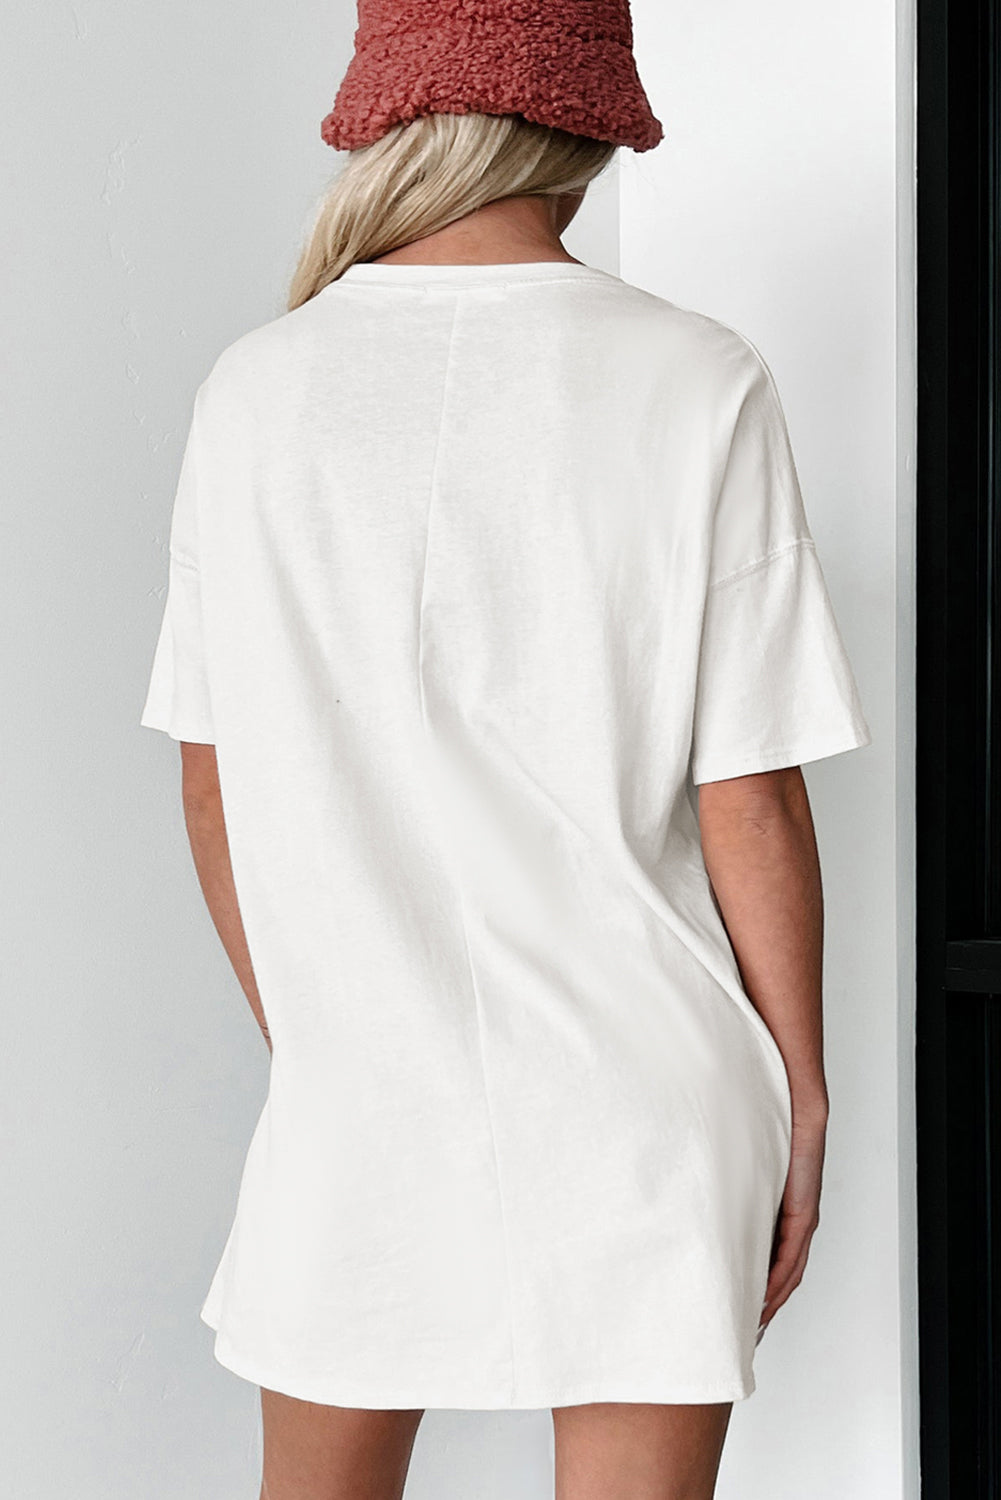 Weißes gestreiftes T-Shirt mit halblangen Ärmeln und Schleife